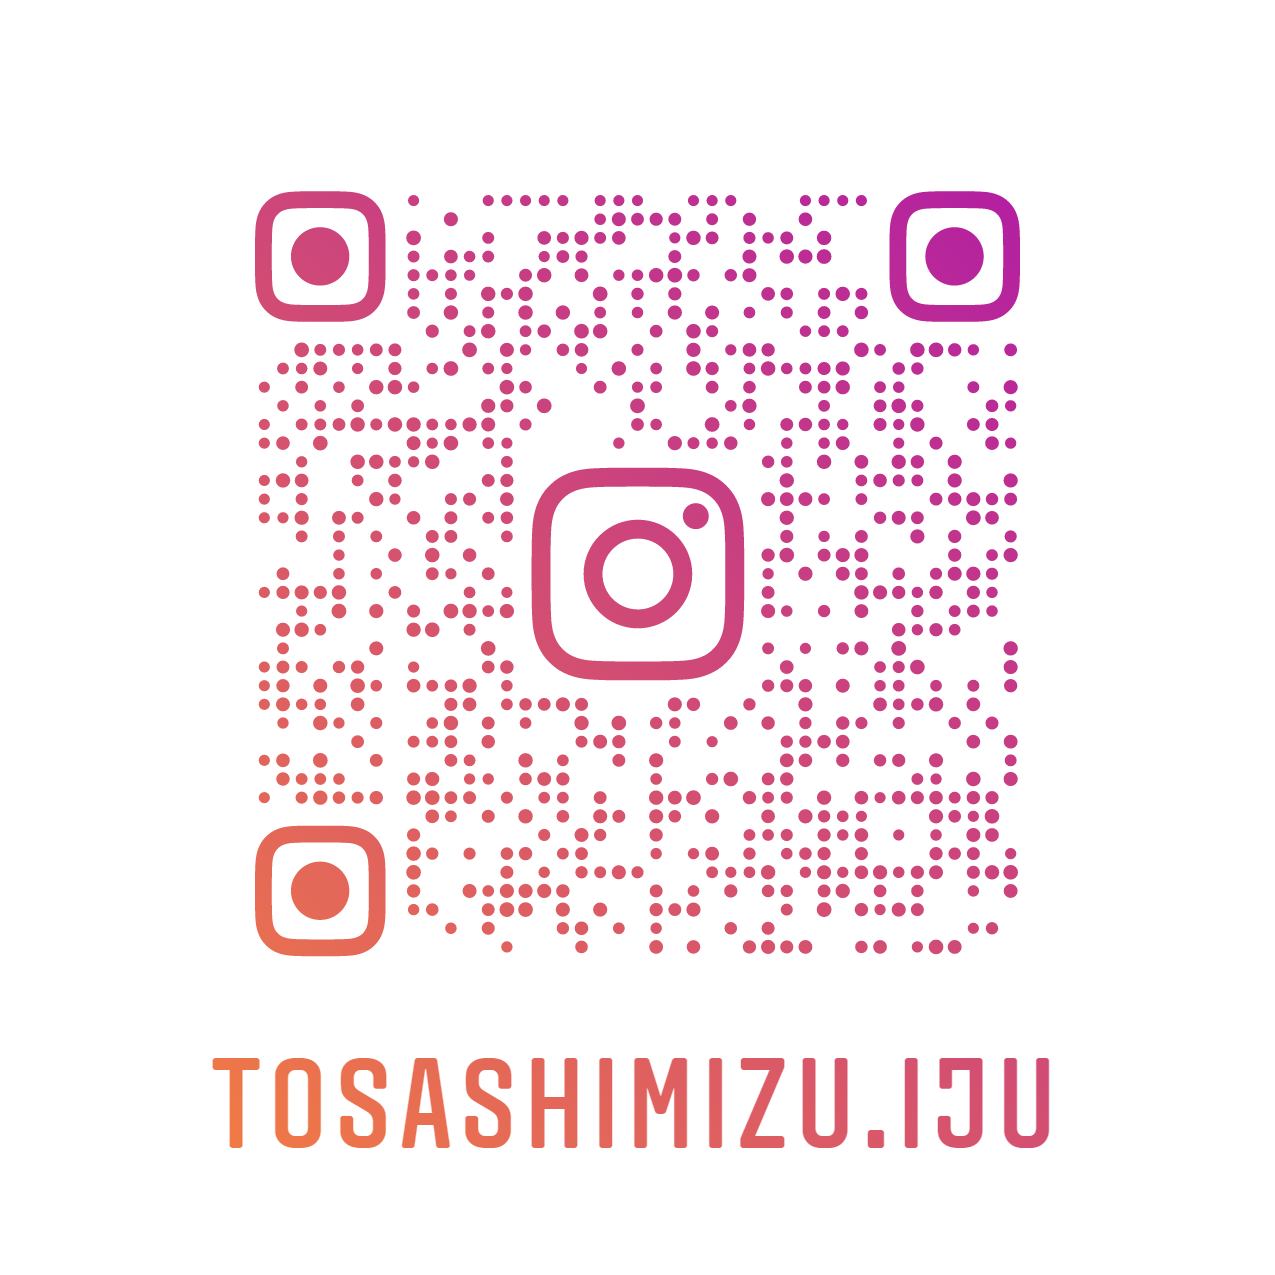 tosashimizu_iju.png